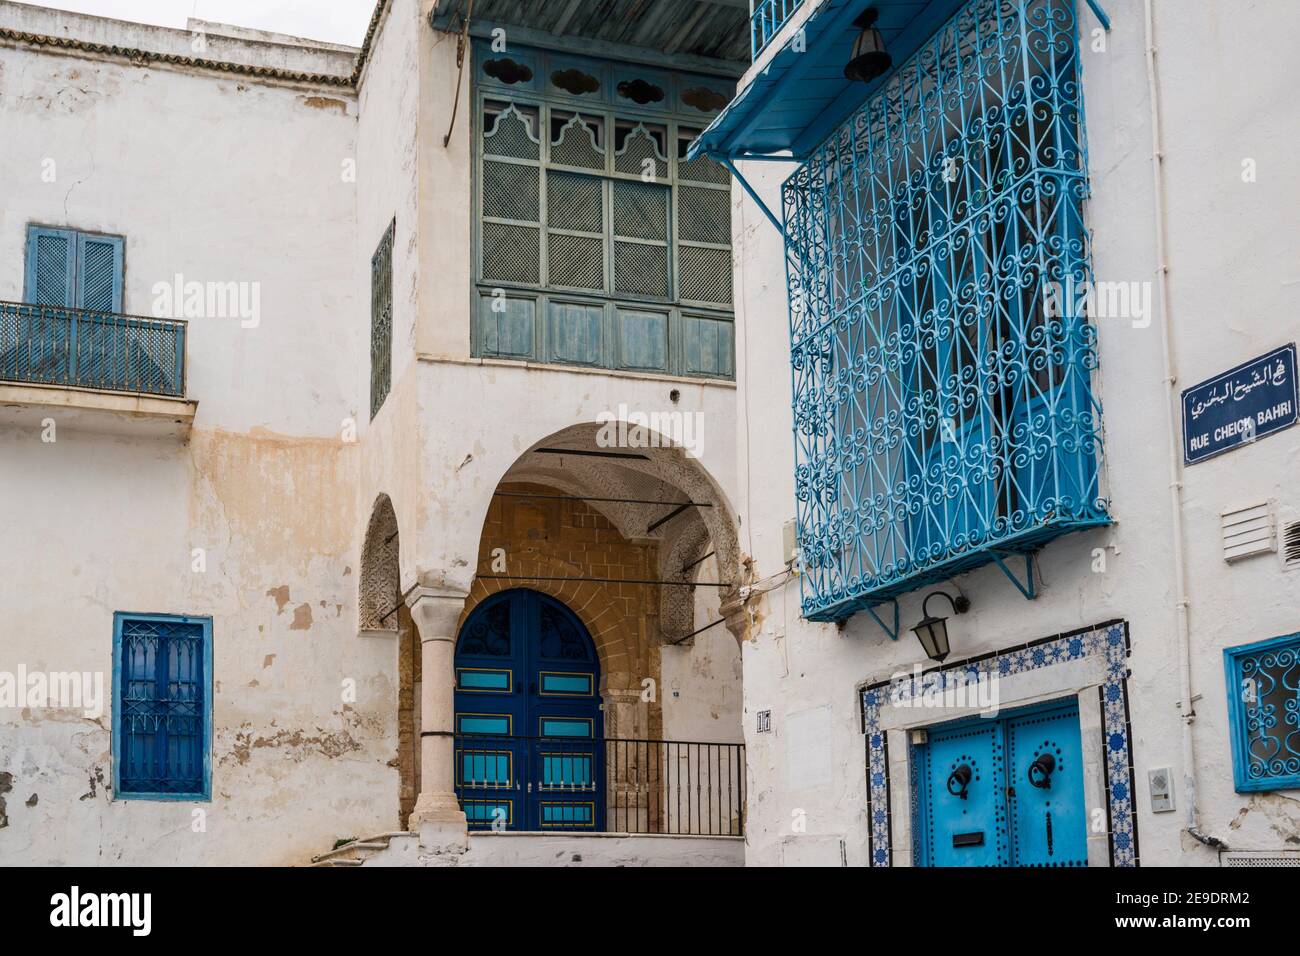 Architecture traditionnelle de Sidi Bou Said, l'attraction touristique bleue et blanche surplombant la mer Méditerranée. Tunisie, Afrique. Banque D'Images